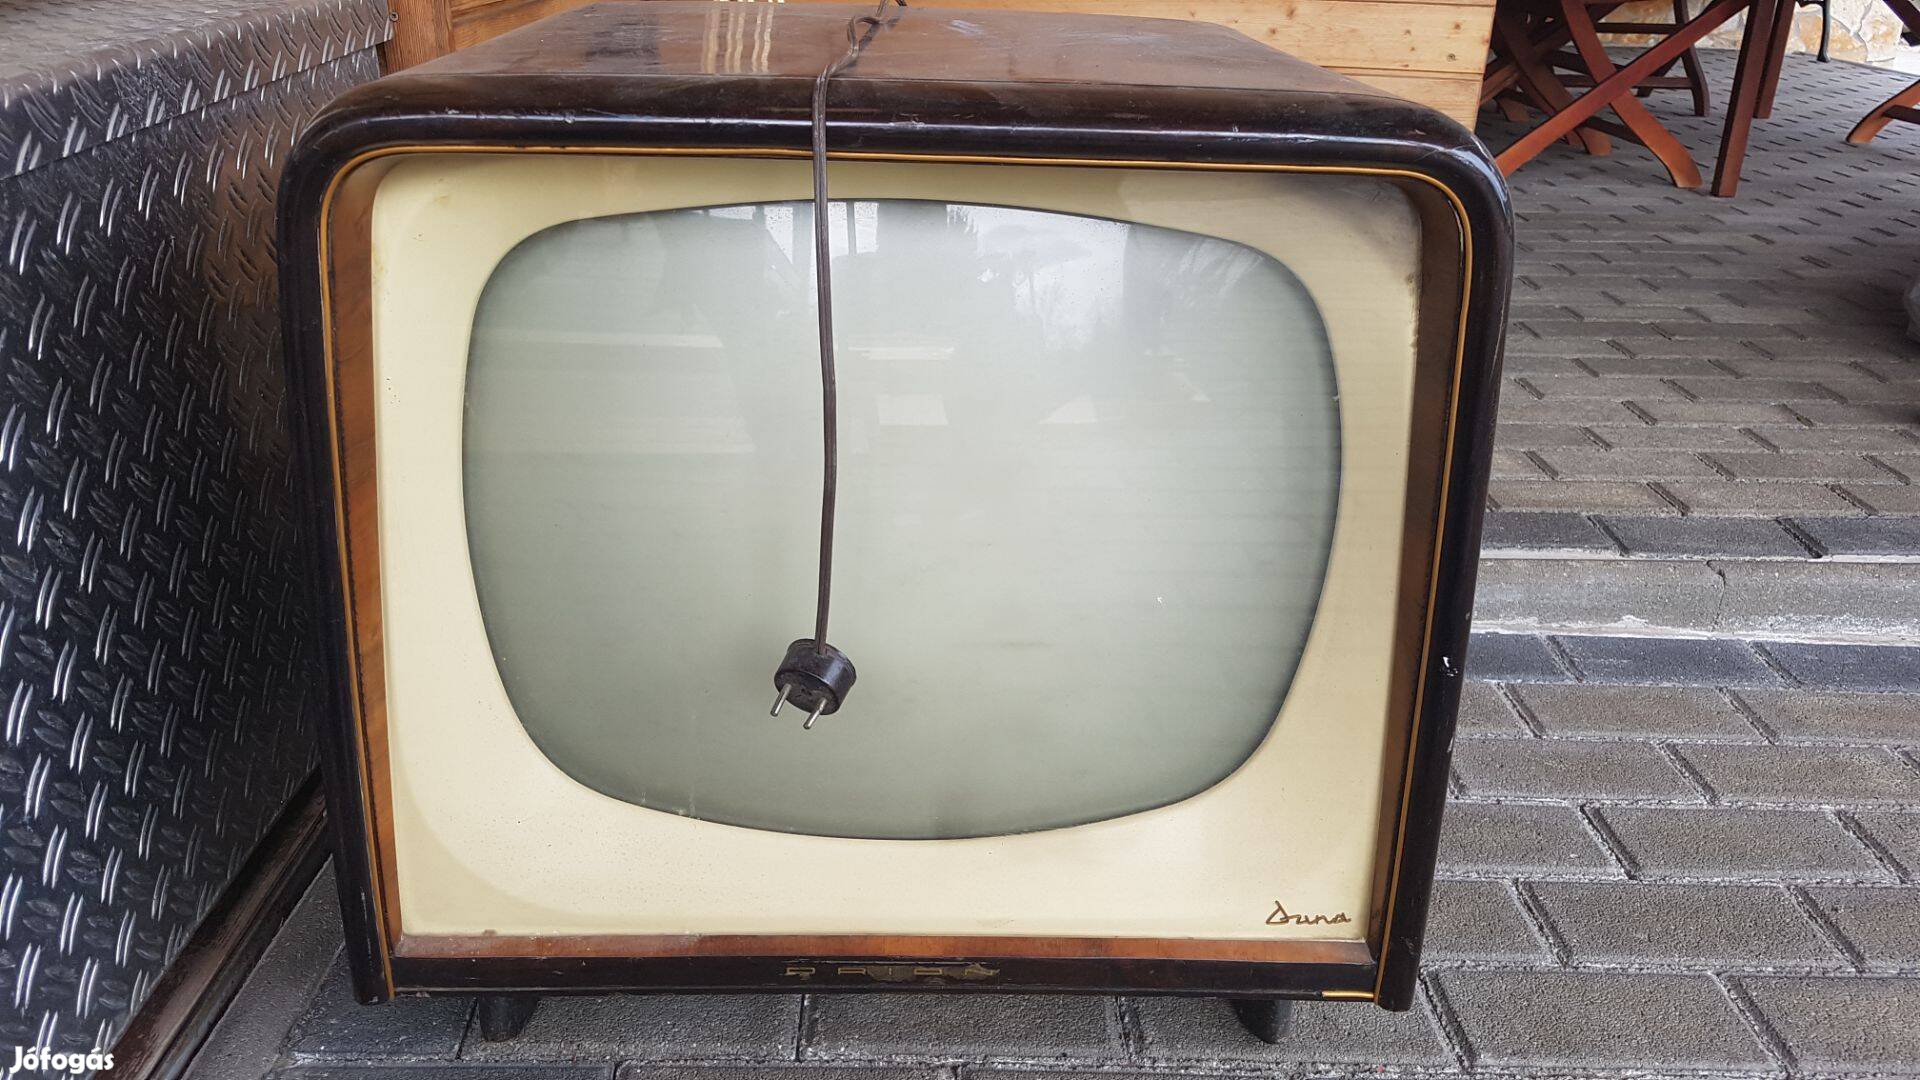 Duna TV Antik